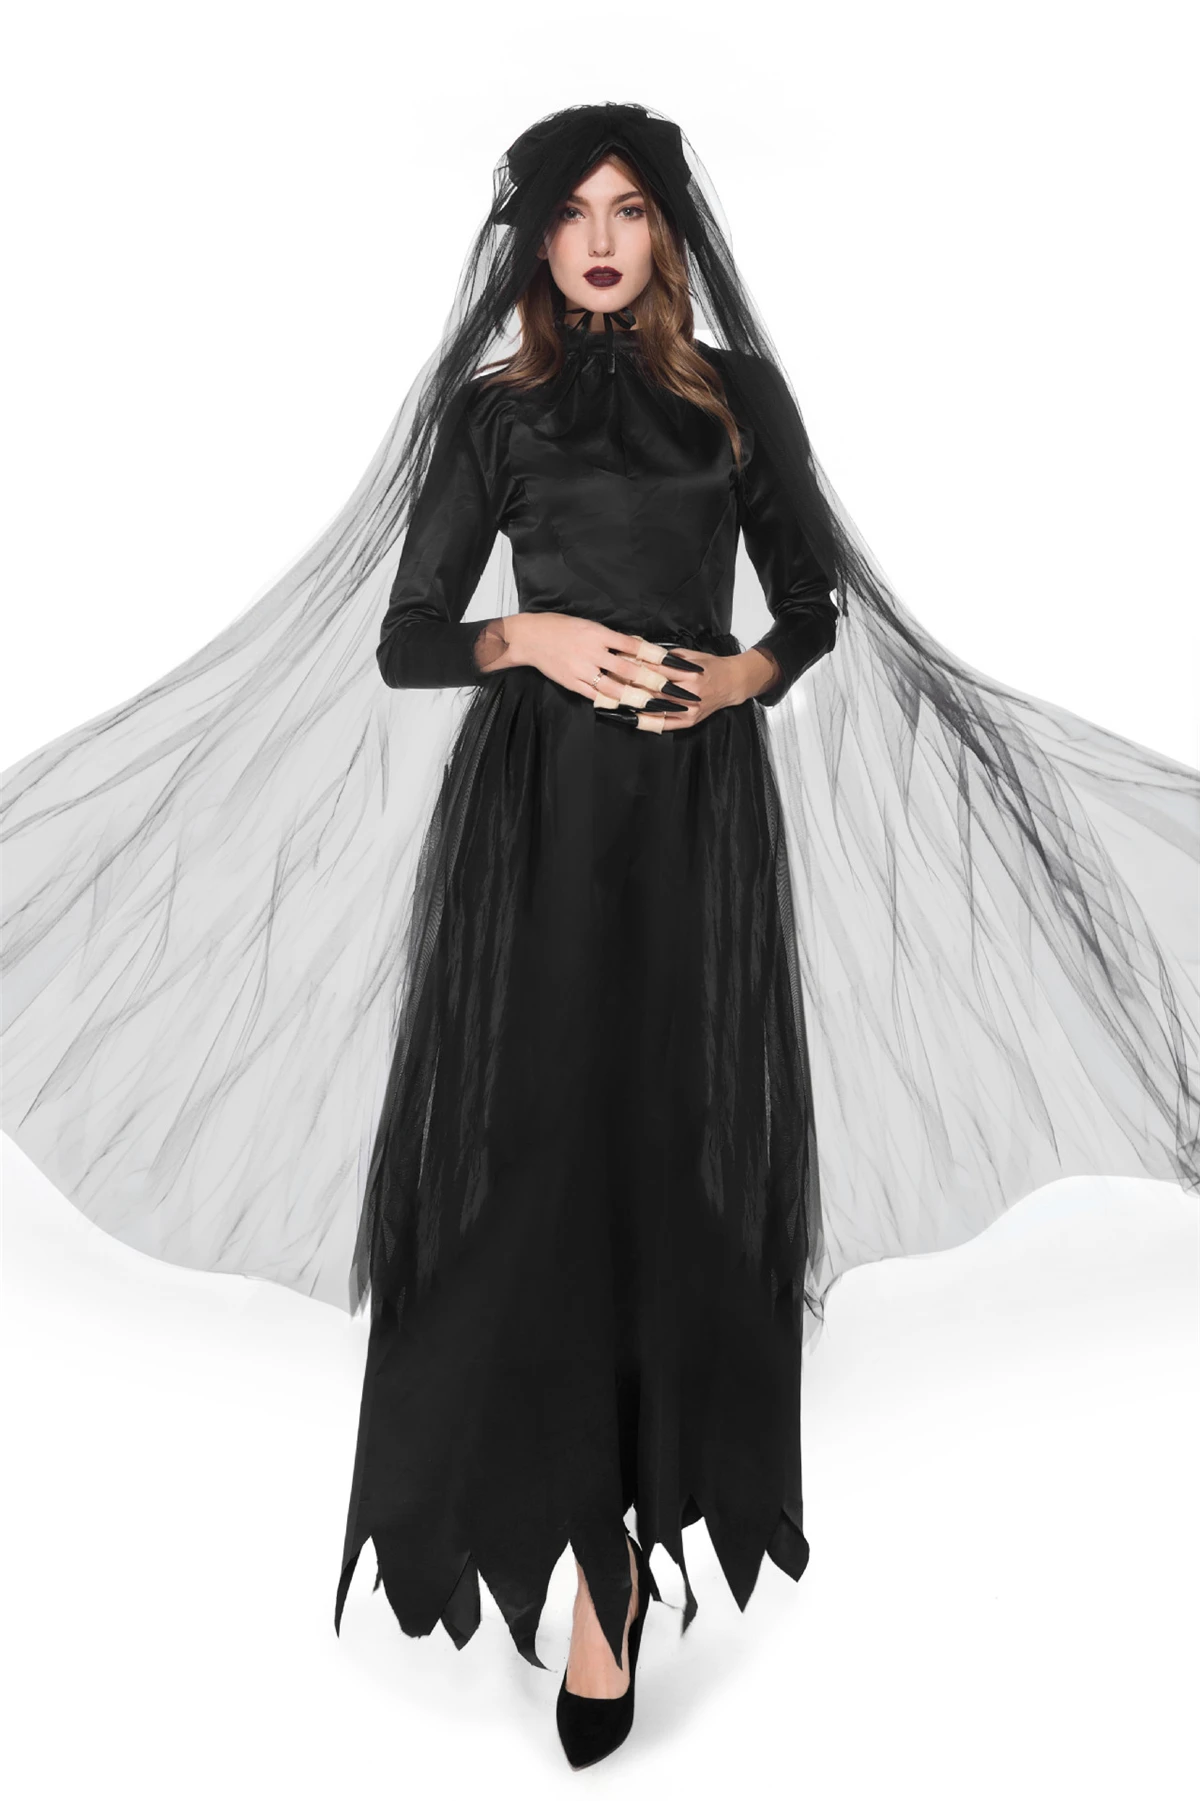 

Женский костюм для косплея страшного ужаса, черный костюм ведьмы, вампира, привидения, невесты, на Хэллоуин, для вечеринки, с вуалью